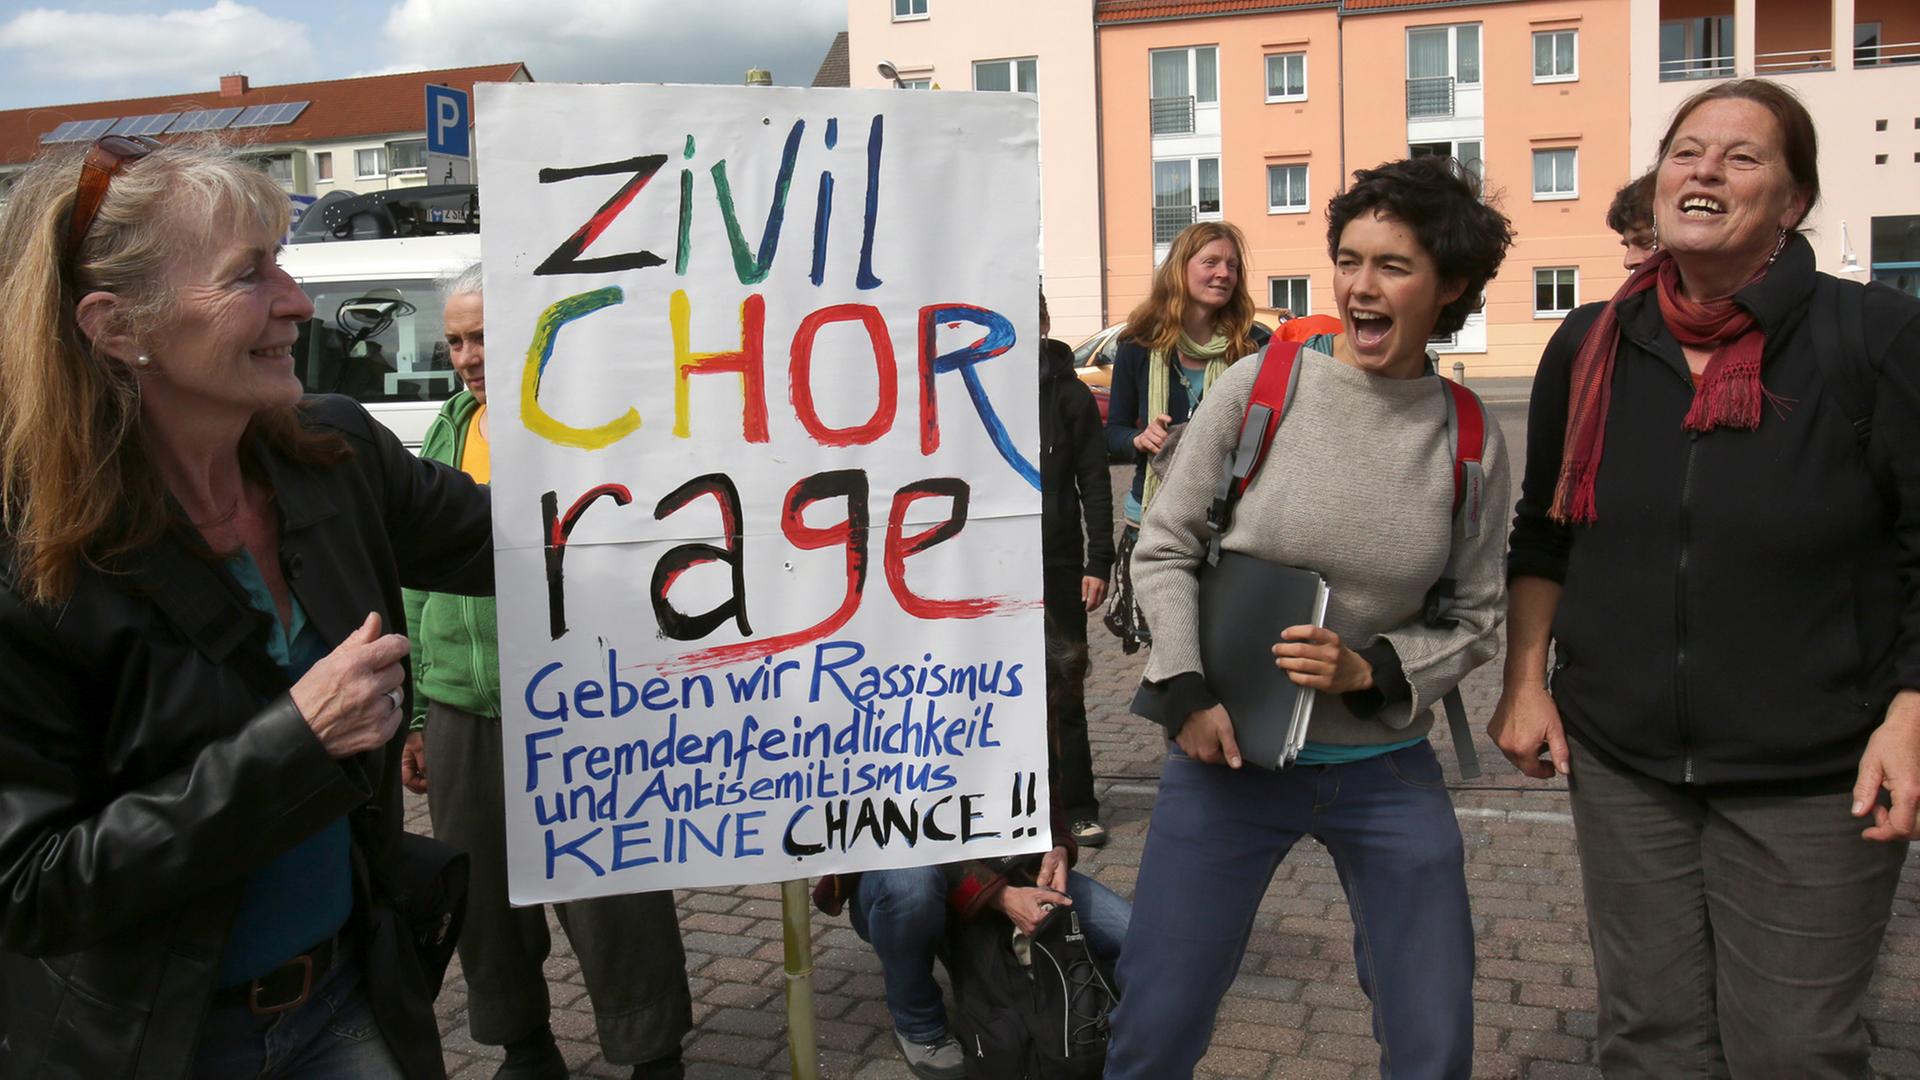 Friedensfest in Demmin in Mecklenburg-Vorpommern am 8. Mai 2015. Das Fest wurde von Initiativen, Kirchen und Parteien gegen einen Fackelmarsch der NPD organisiert.